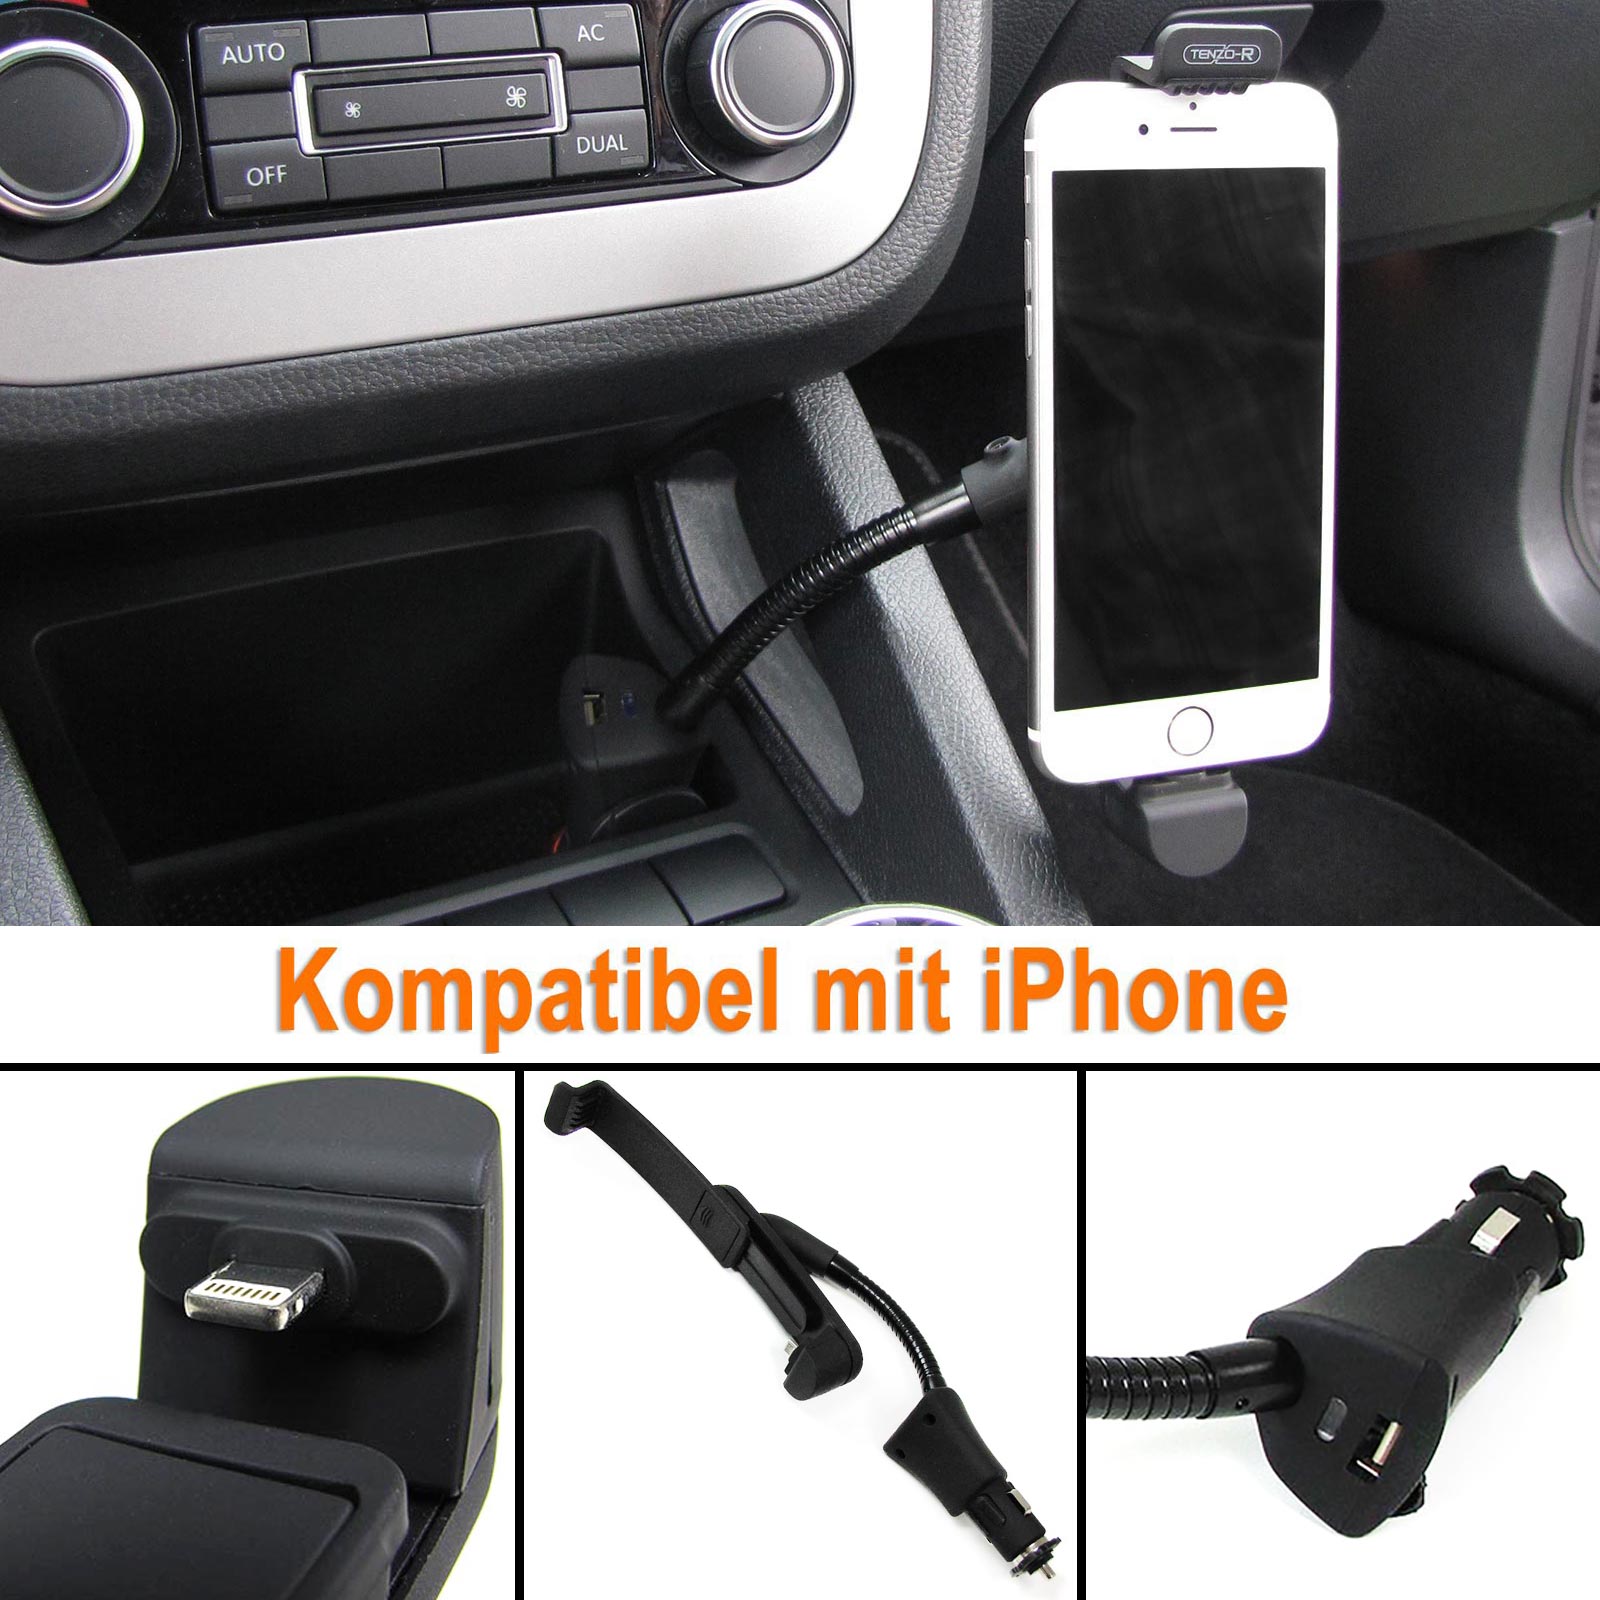 Aktive KFZ Auto Handy Halterung mit Ladestation für iPhone 5 5C 5S 5SE 6 6S  kaufen